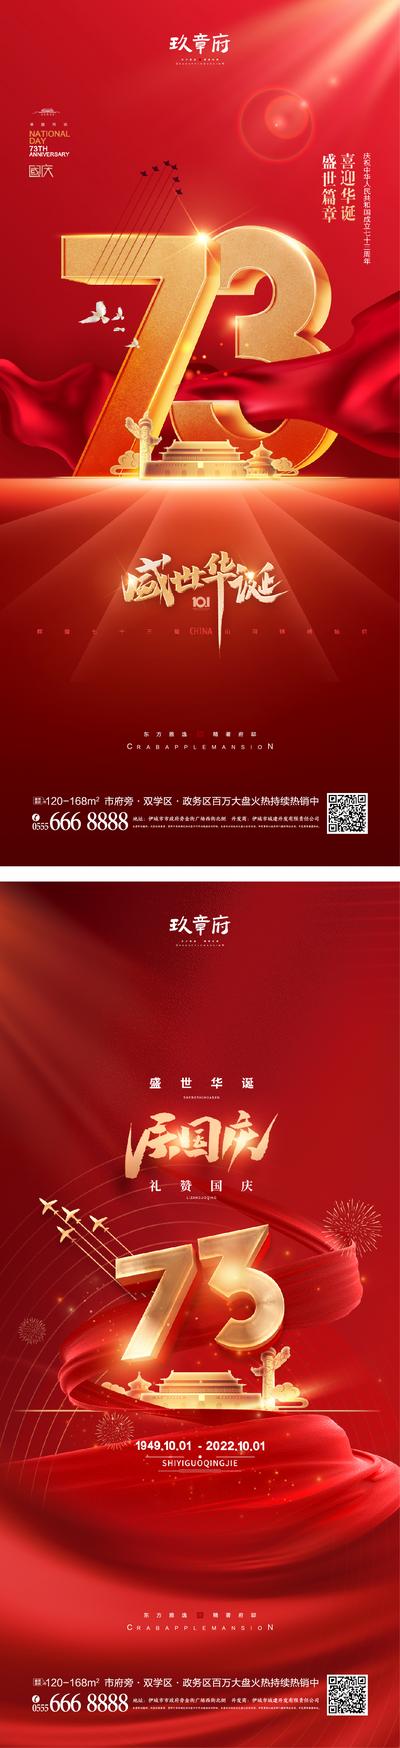 南门网 海报 房地产 公历节日 国庆节 73周年 数字 红绸 红金